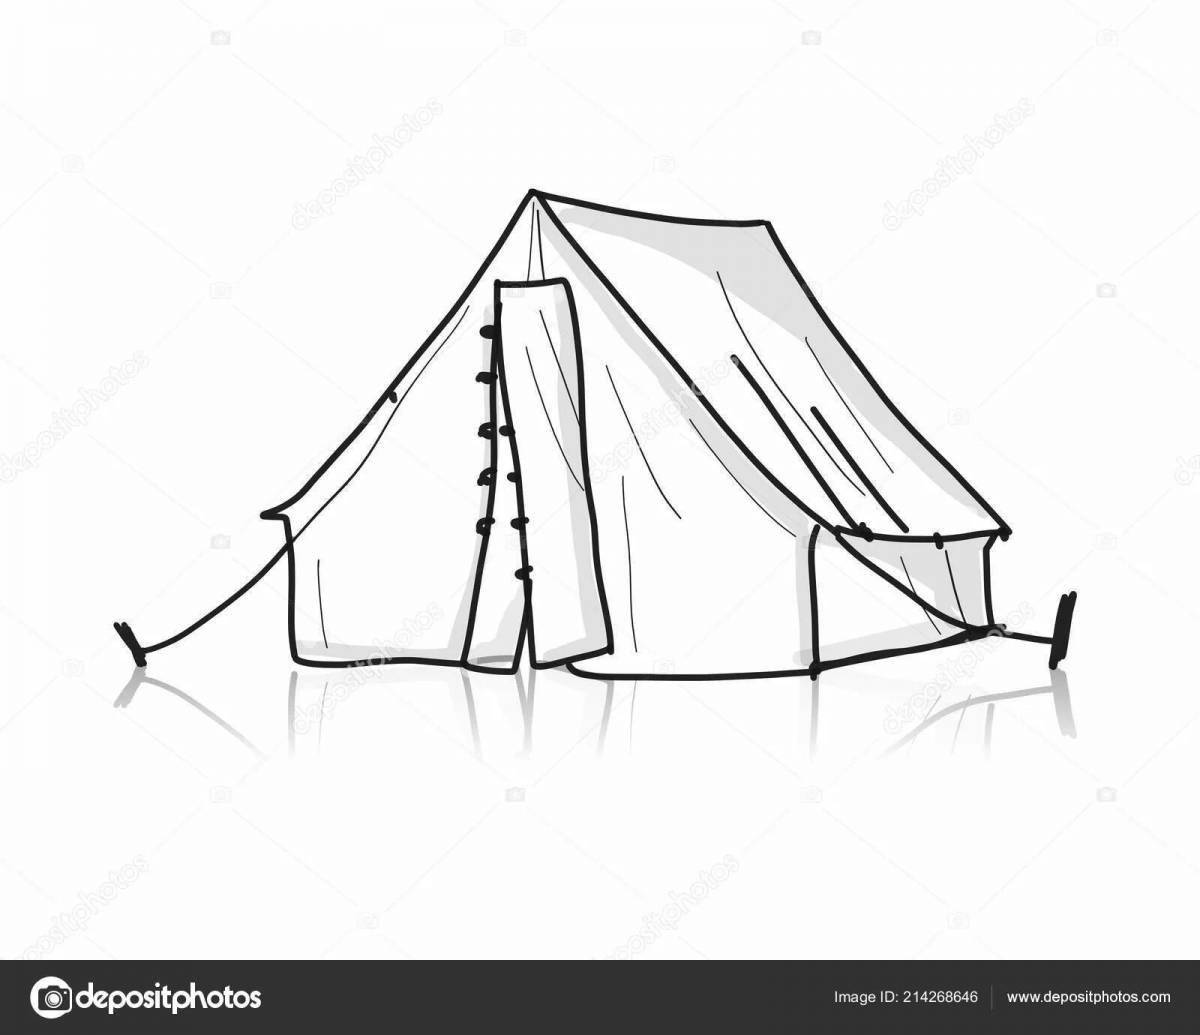 Children's tent #10